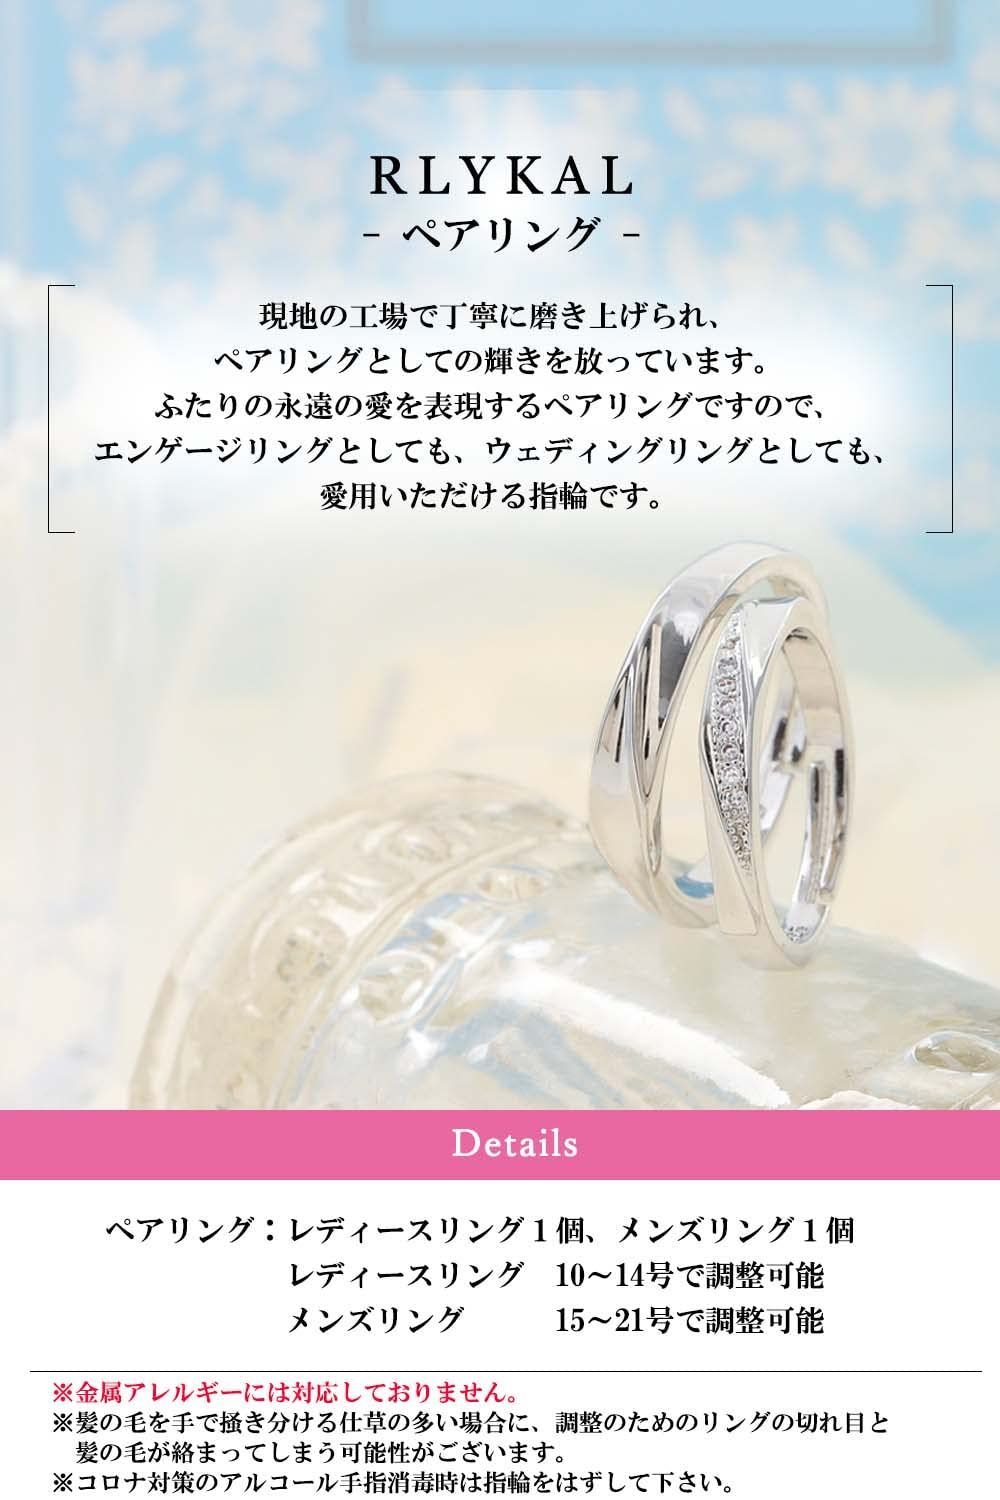 【特注加工】X322 ペアリング 結婚指輪 レディース メンズ カップル フリーサイズ アクセサリー